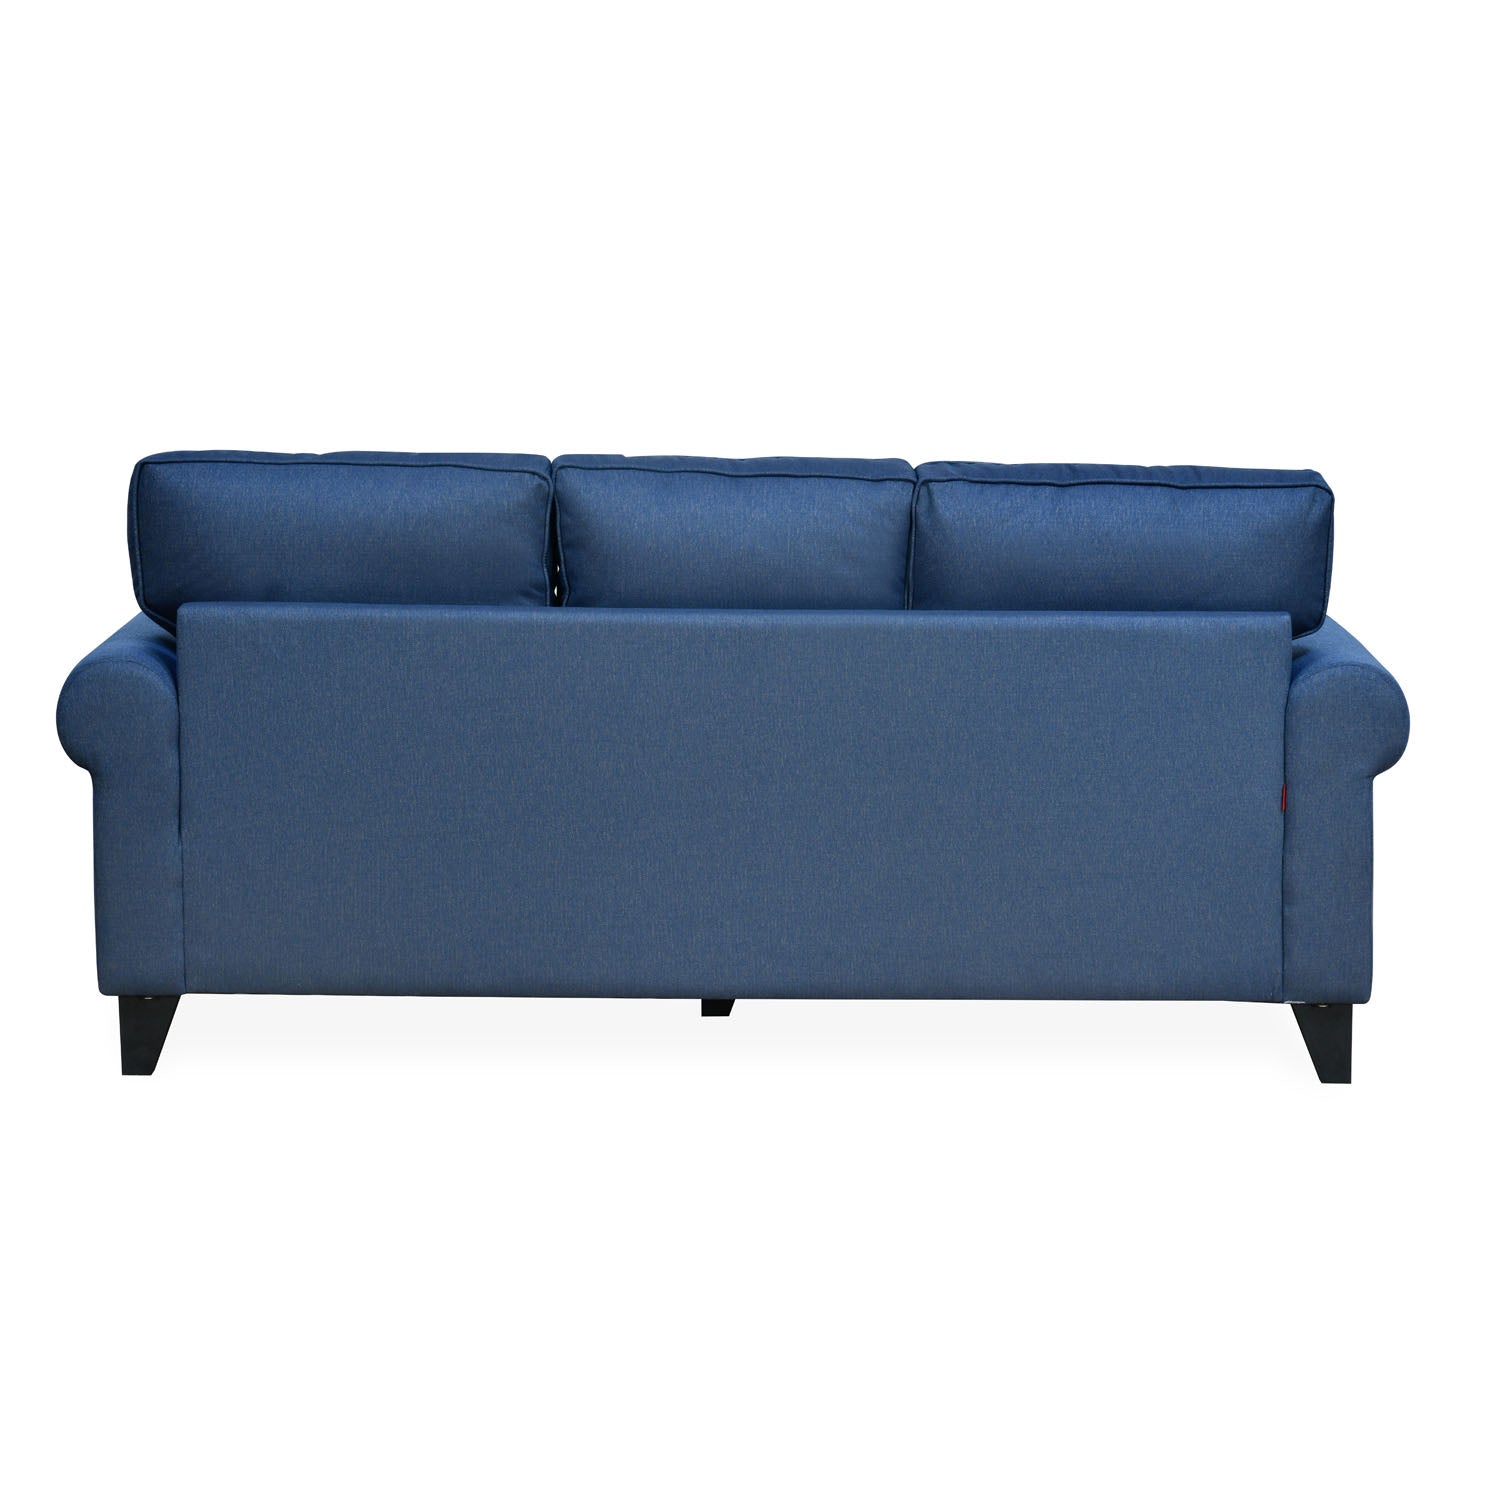 Velma 3 Seater Fabric Sofa with Cushion (Blue)